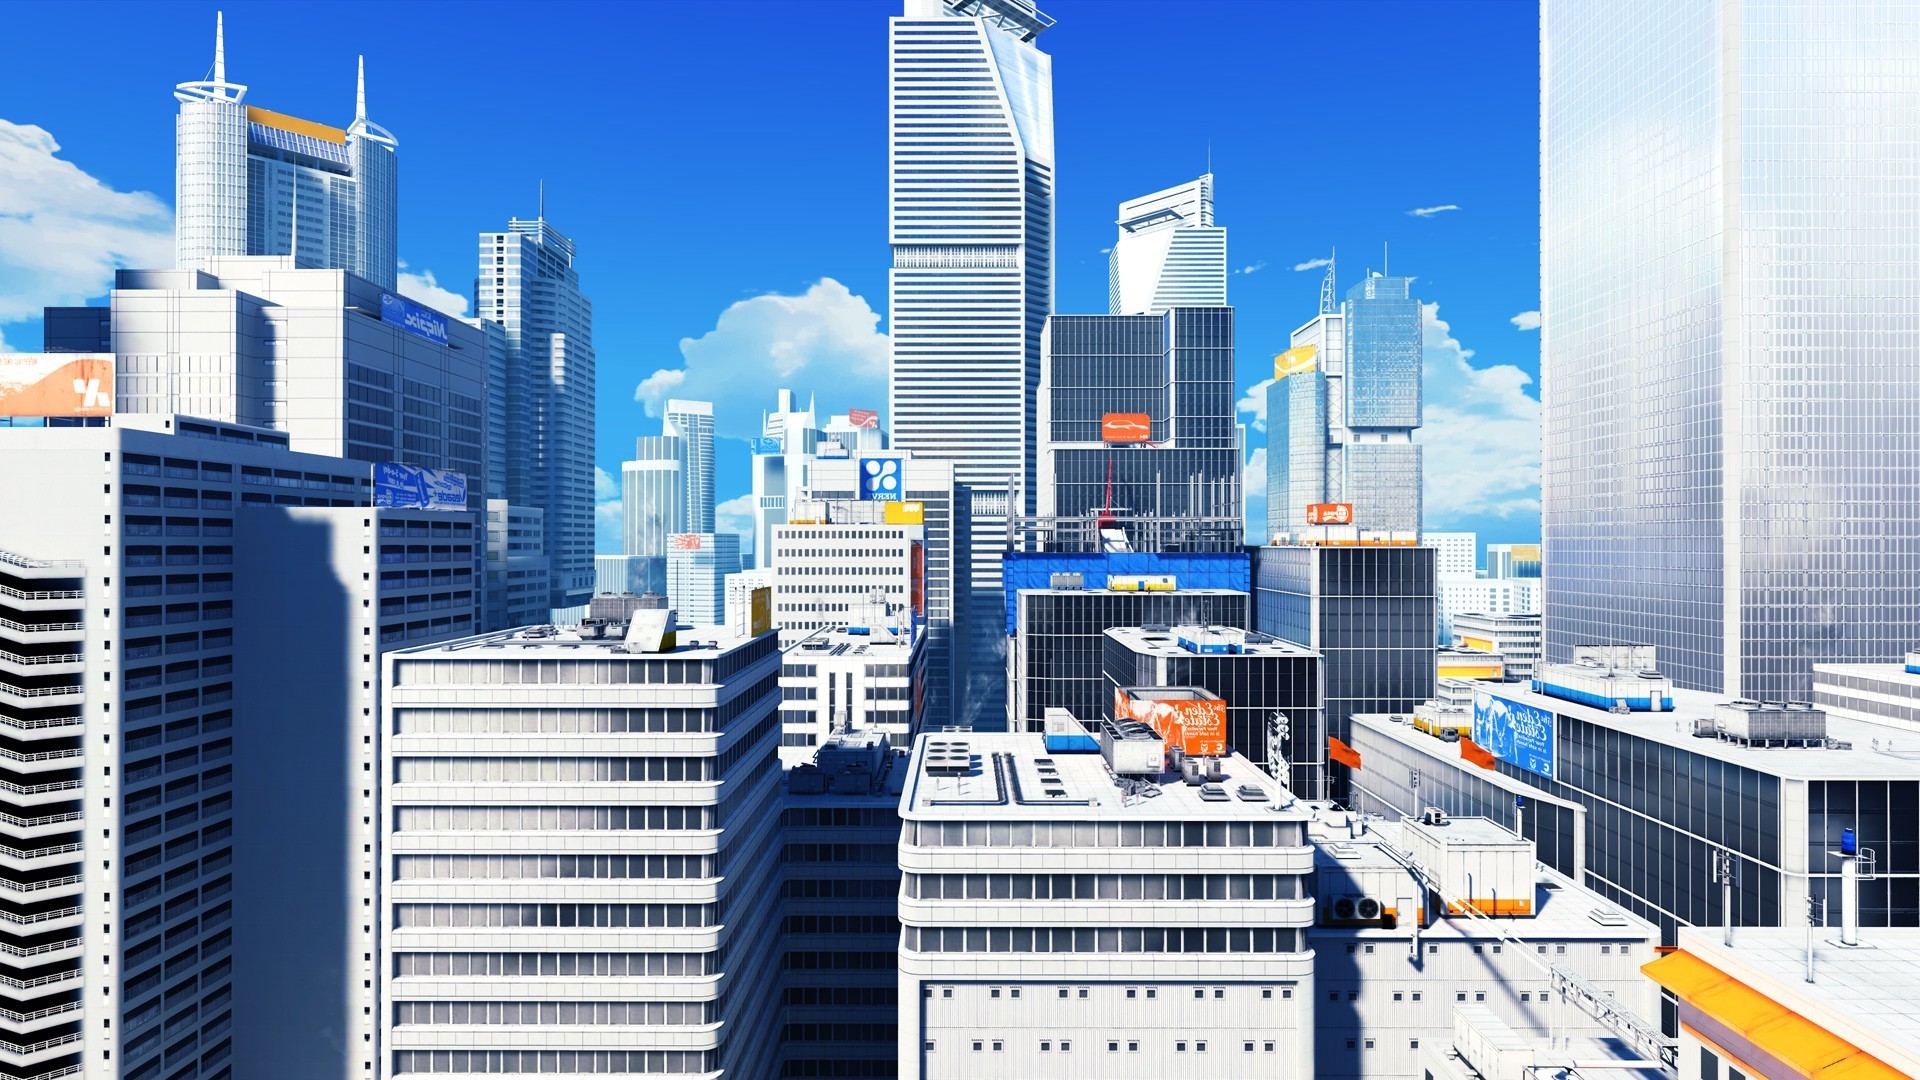 Mirrors Edge, Screenshots, Video Games, Cityscape, Skyscraper Wallpaper